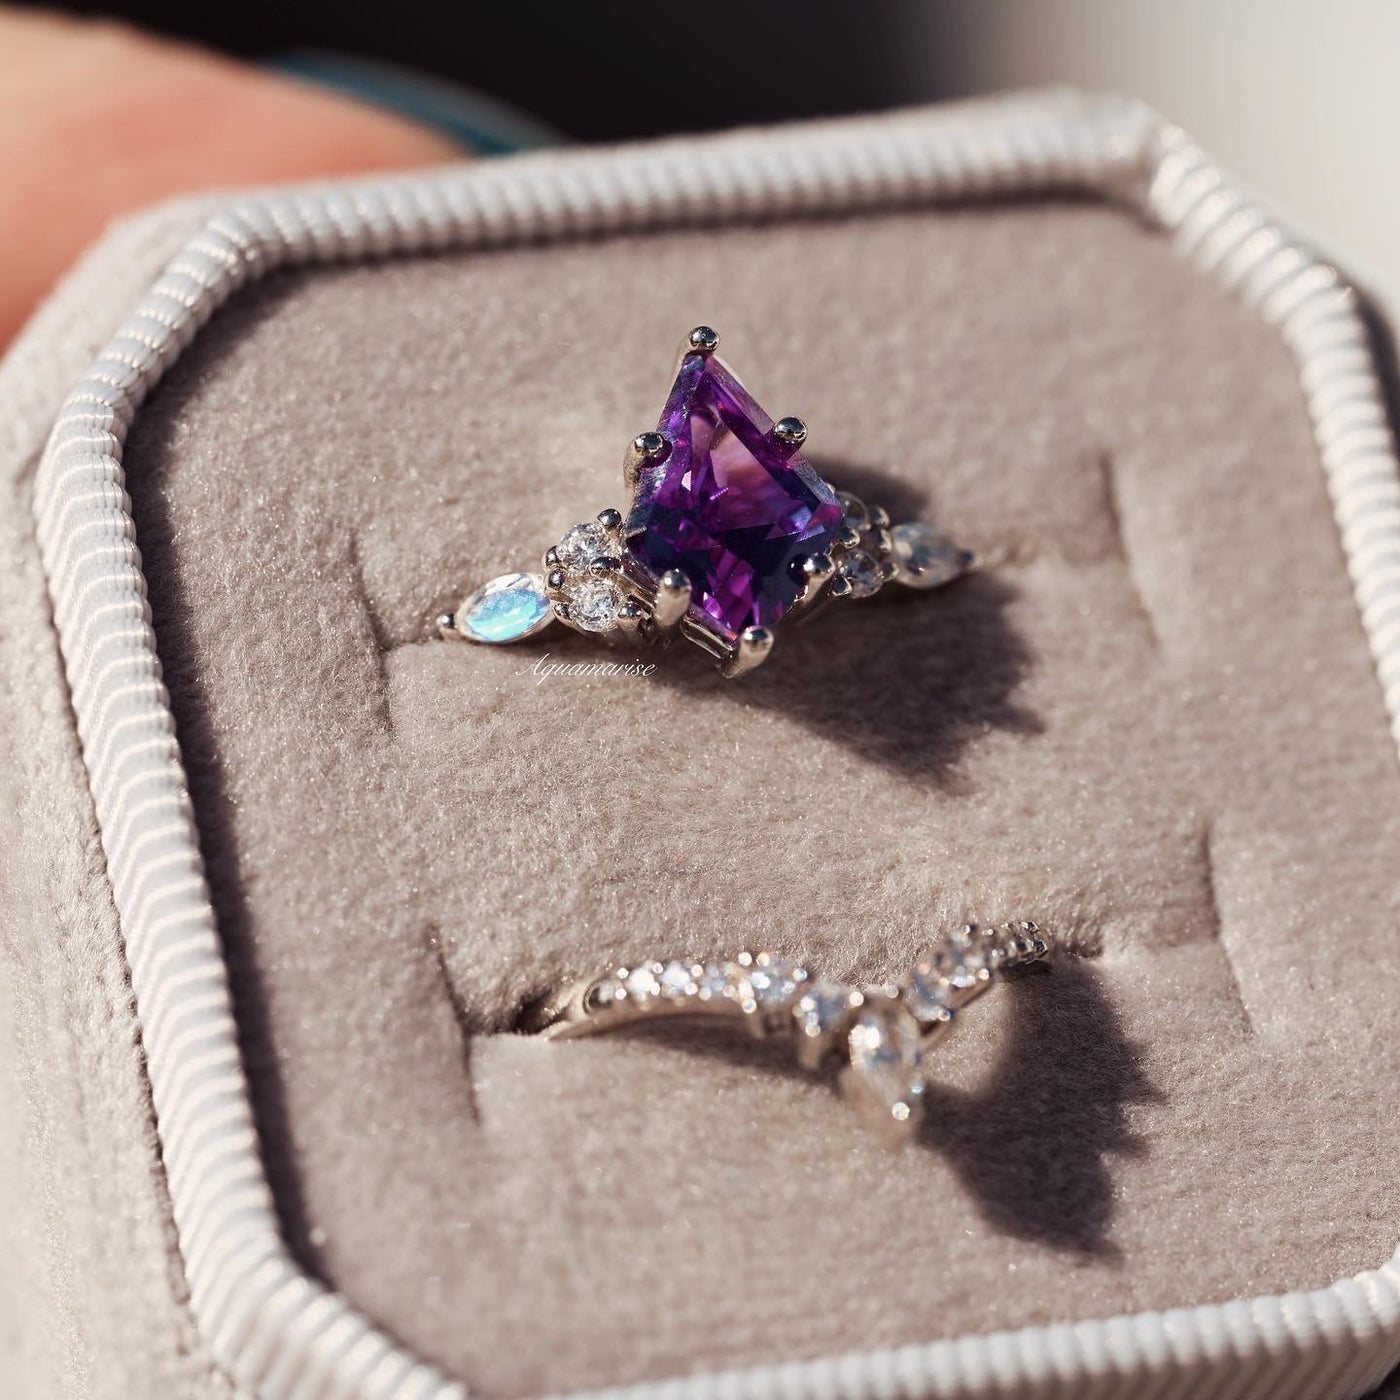 Skye Alexandrite & Moonstone Ring Set- Sterling Silver Kite Engagement Rings For Women